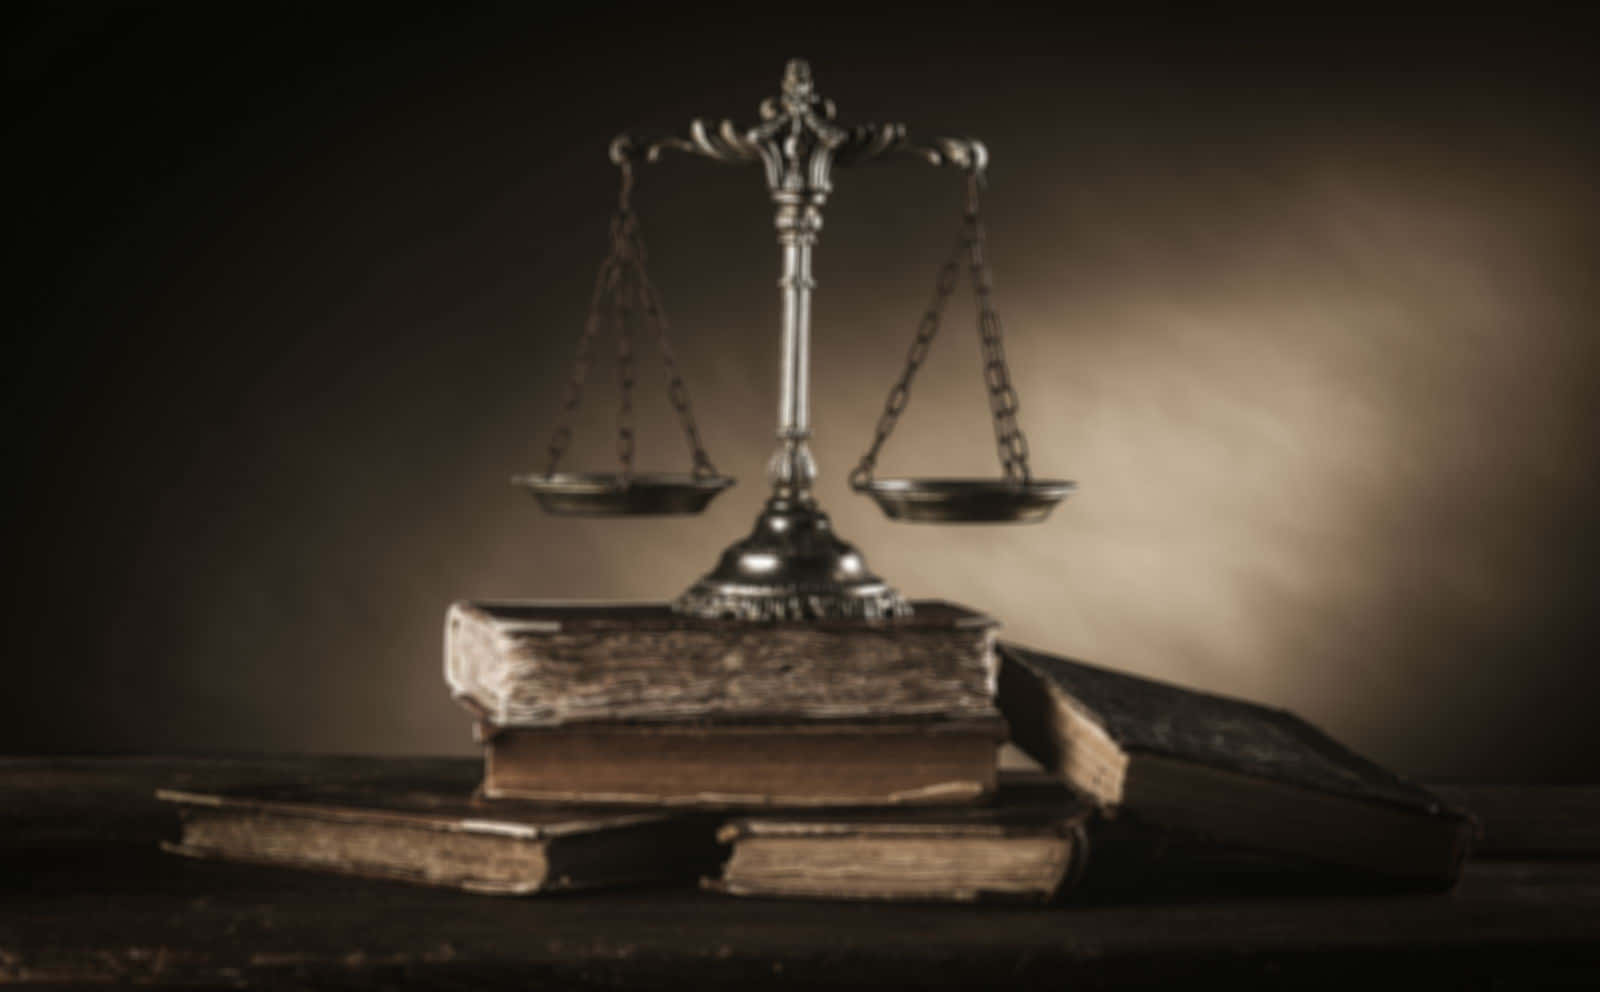 Enerfaren Advokat Som Hanterar Komplexa Juridiska Ärenden